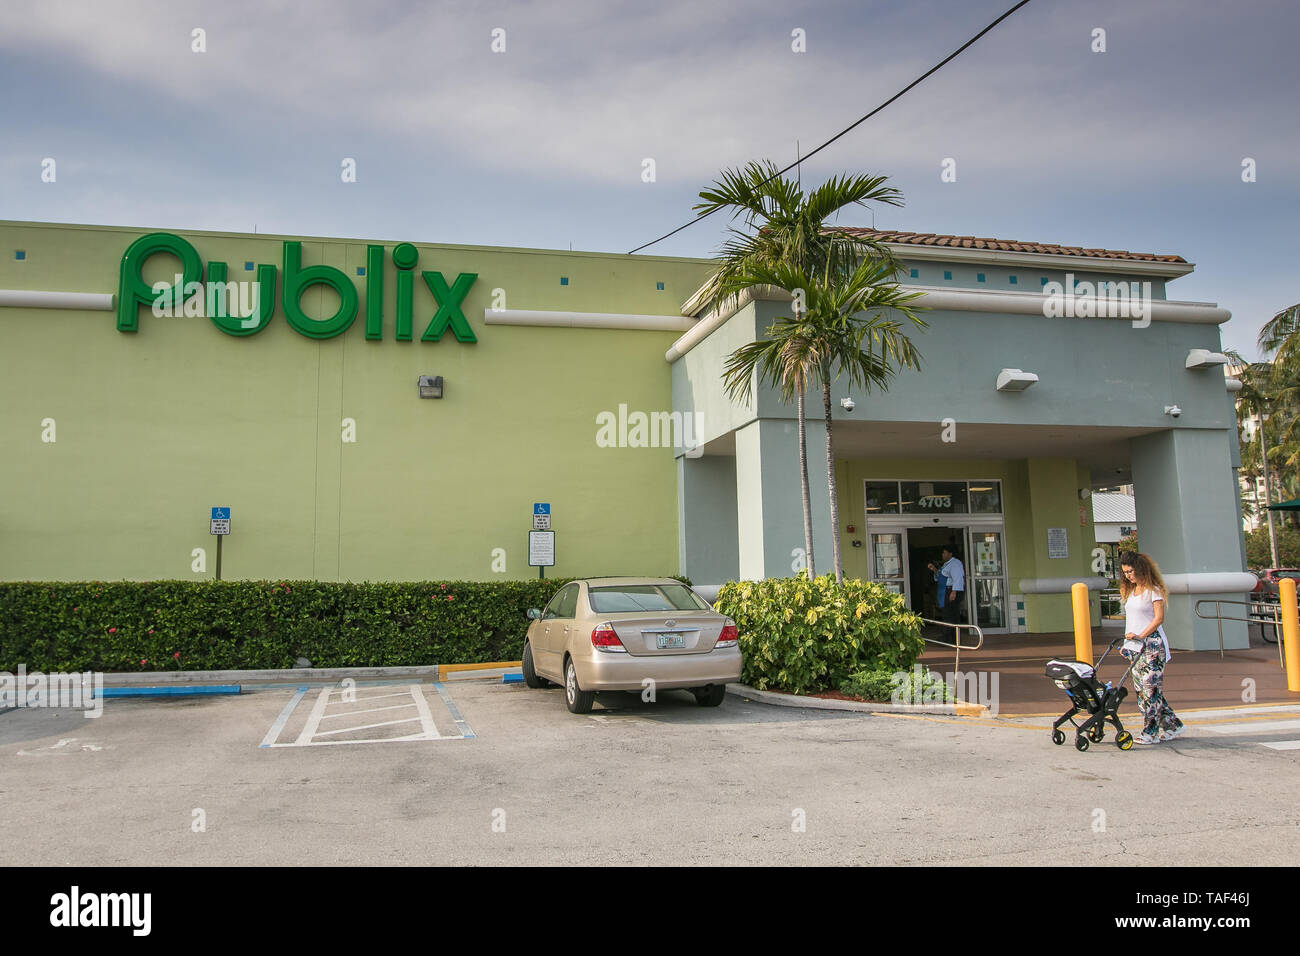 Fort Lauderdale, FL, 5/15/2019: View of a Publix supermarket. Stock Photo